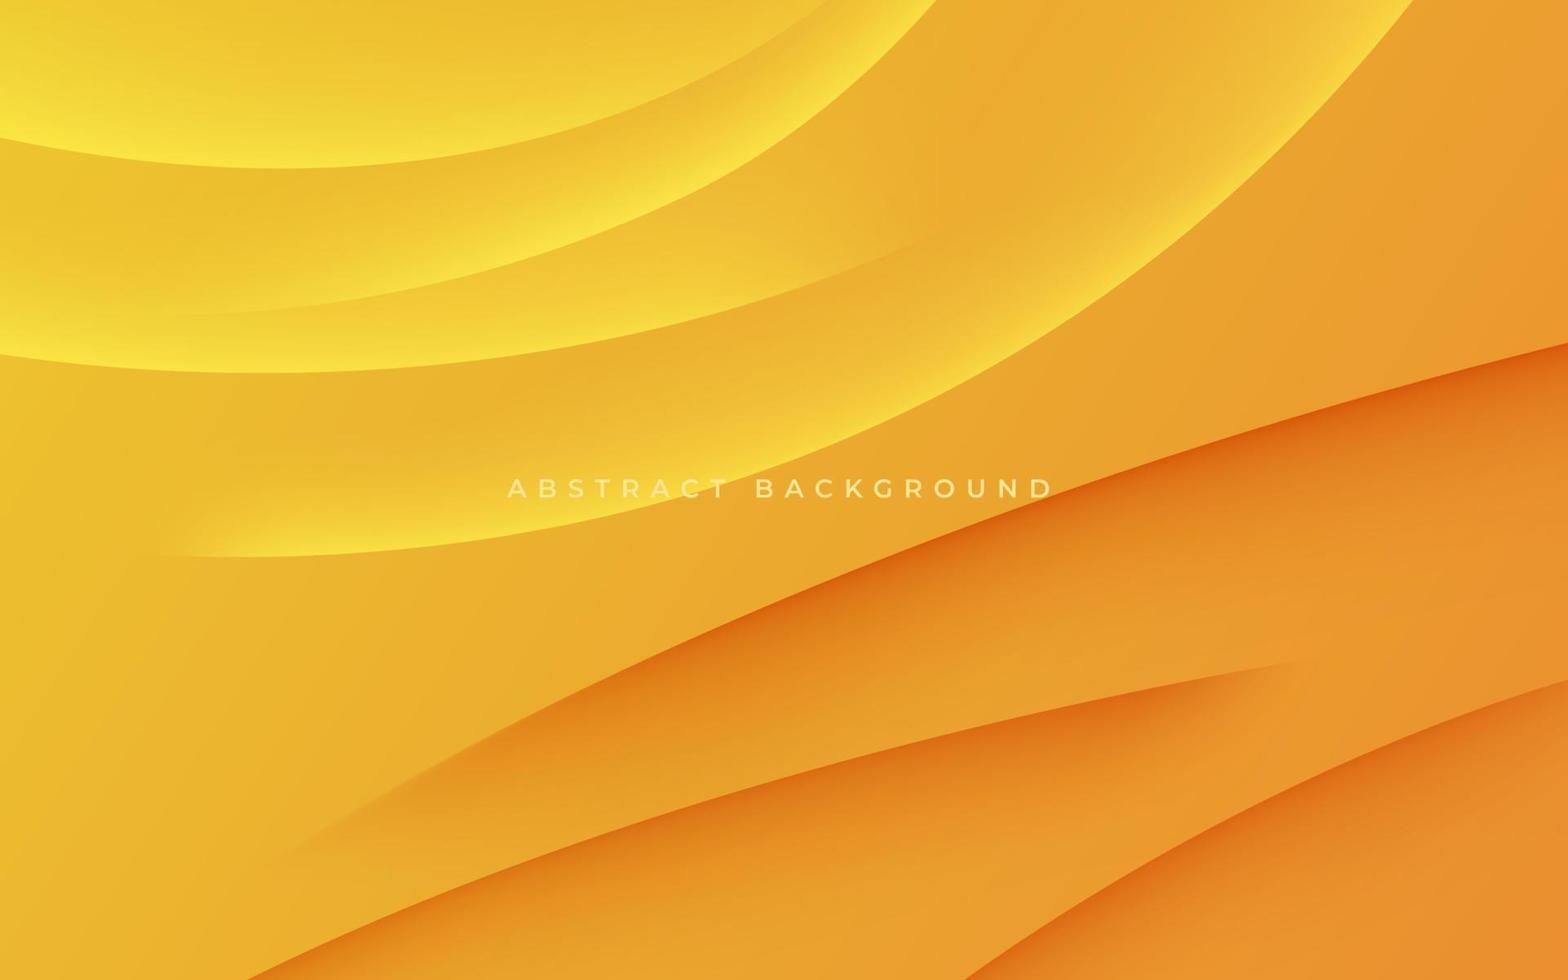 astratto giallo arancia dinamico ondulato ombra e leggero moderno design geometrico futuristico vettore sfondo illustrazione.